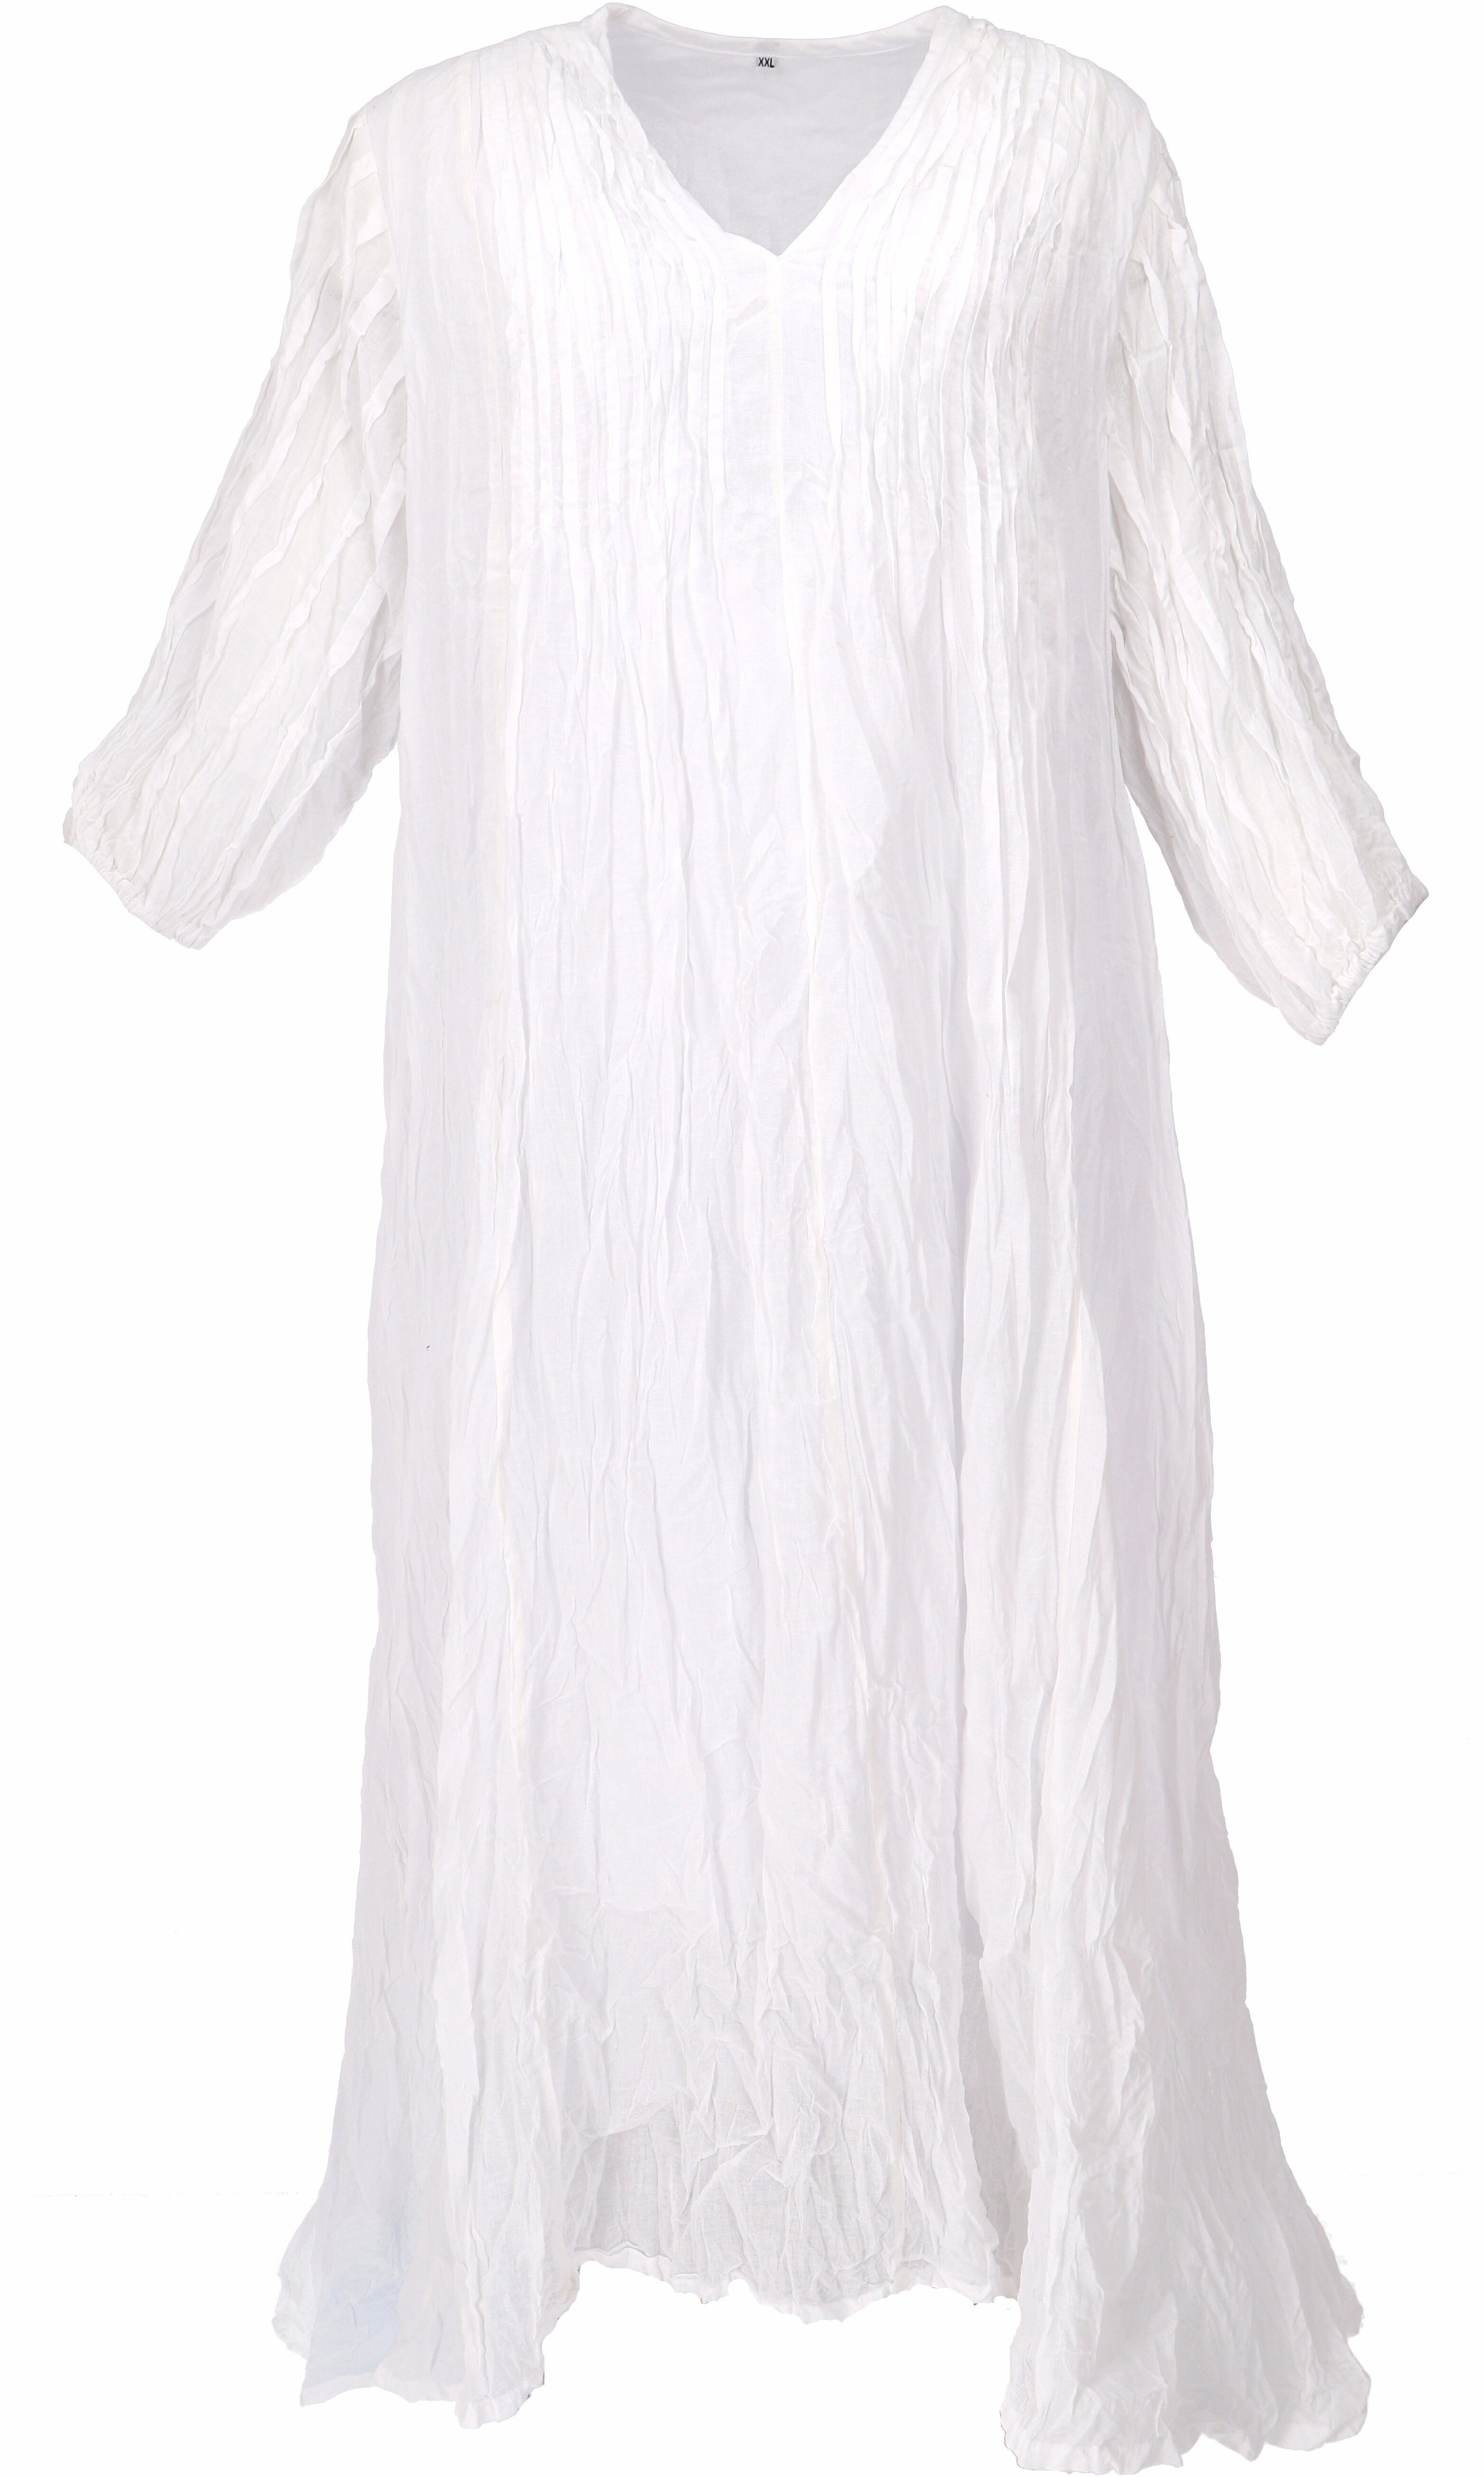 Guru-Shop Midikleid Boho Maxikleid, luftiges weiß alternative Bekleidung für.. Sommerkleid langes